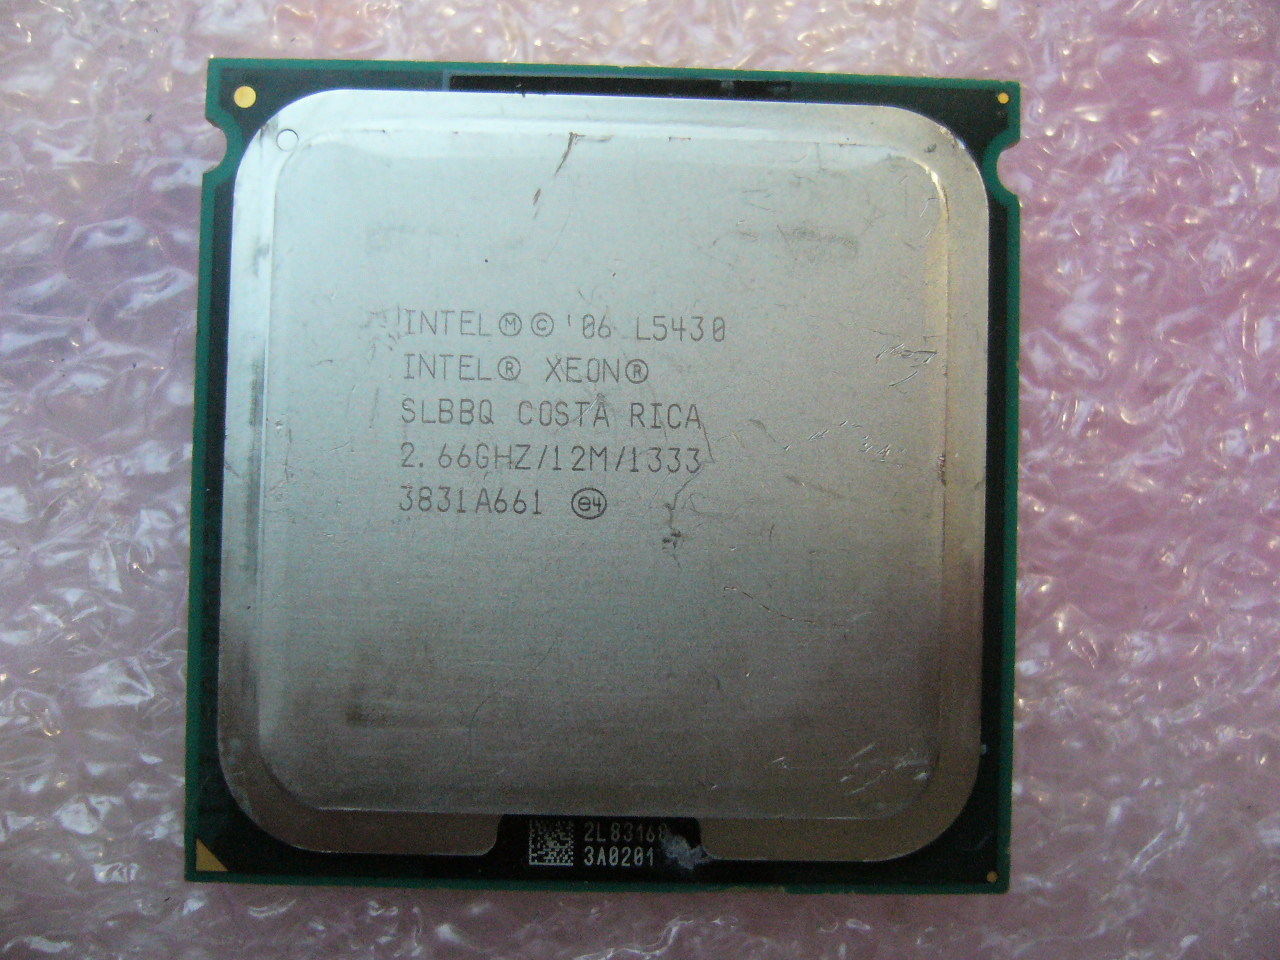 QTY 1x Intel Xeon CPU Quad Core L5430 2.66Ghz/12MB/1333Mhz LGA771 SLBBQ 50W